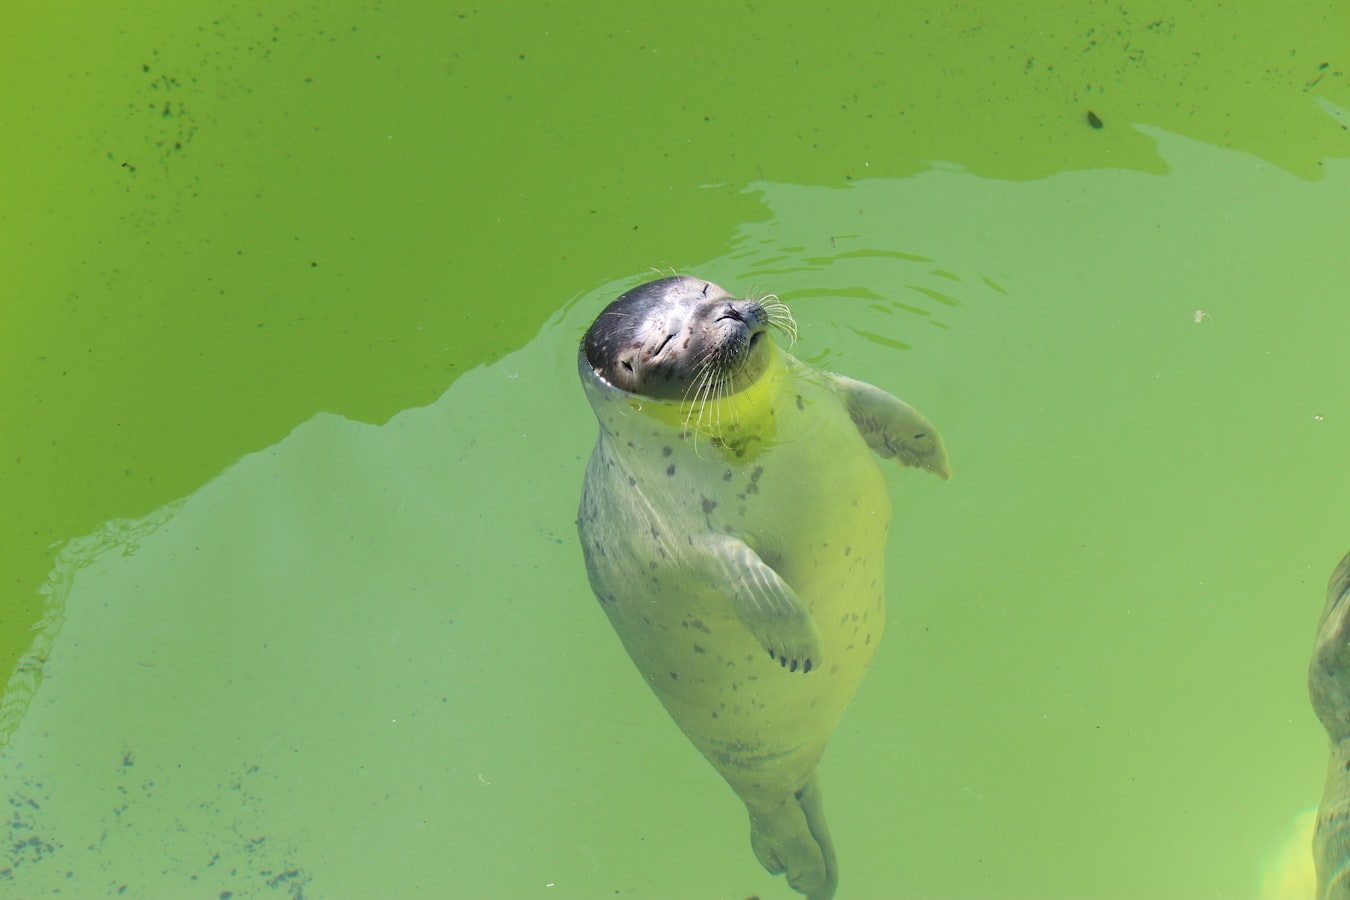 sunbathing seal